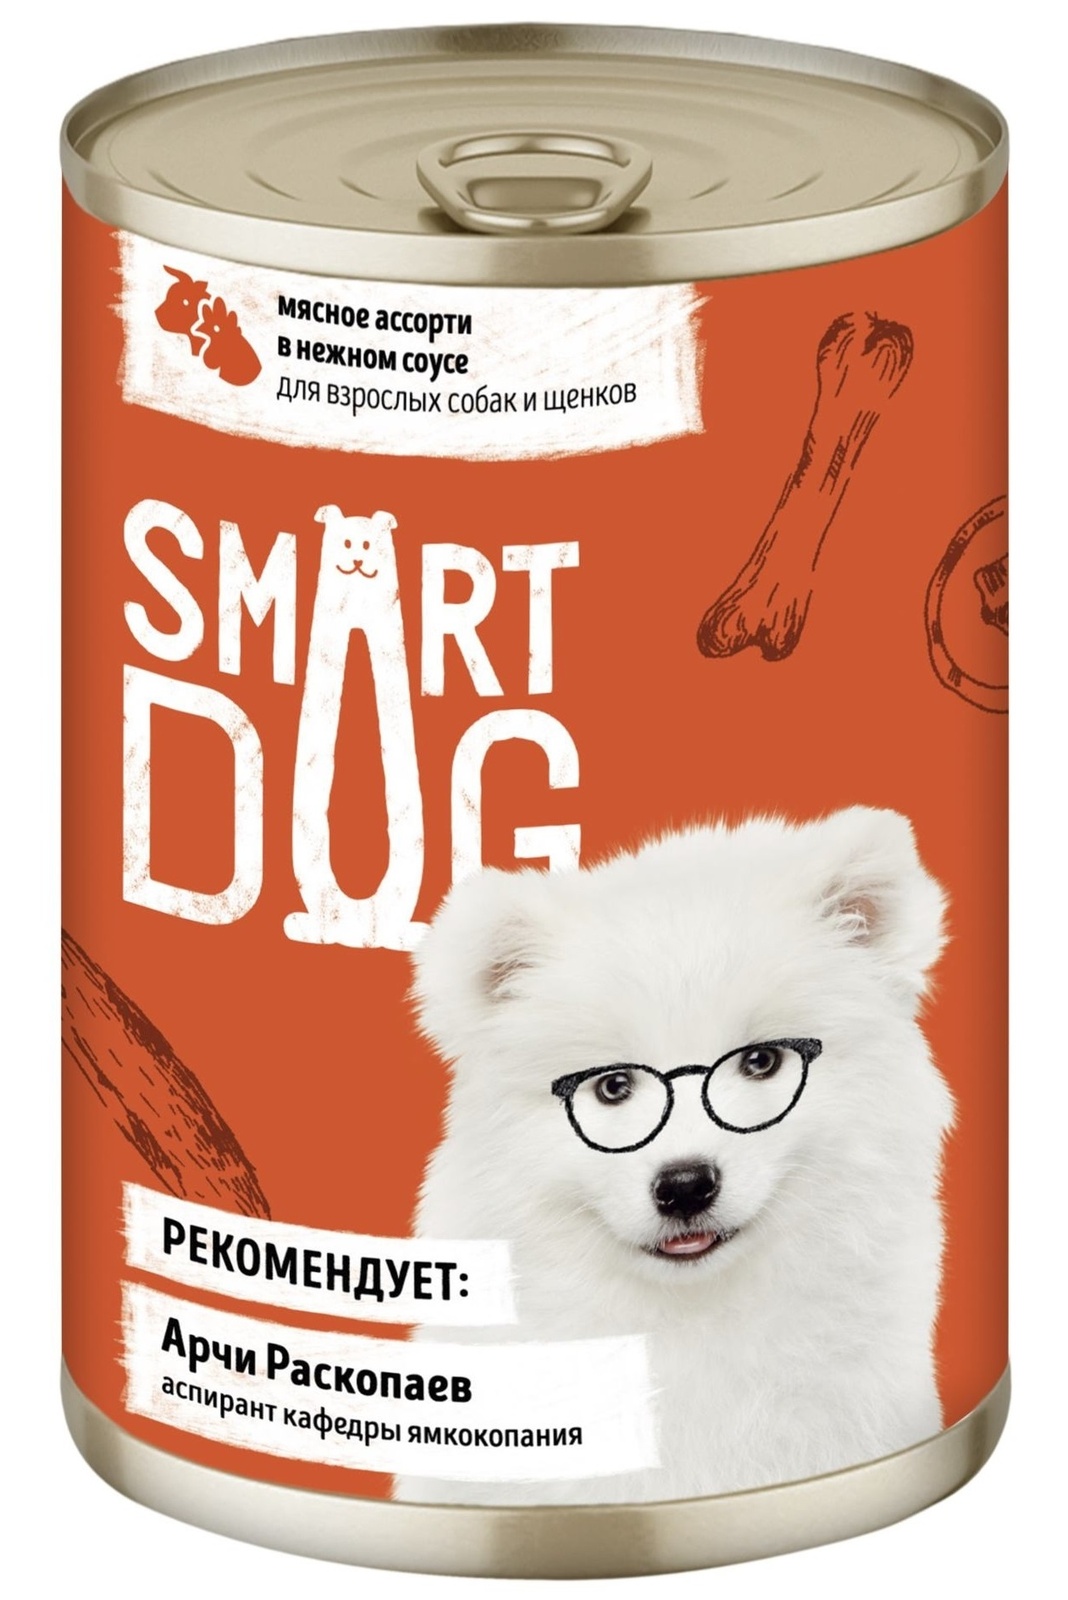 Smart Dog консервы Smart Dog консервы консервы для взрослых собак и щенков мясное ассорти в нежном соусе (240 г)